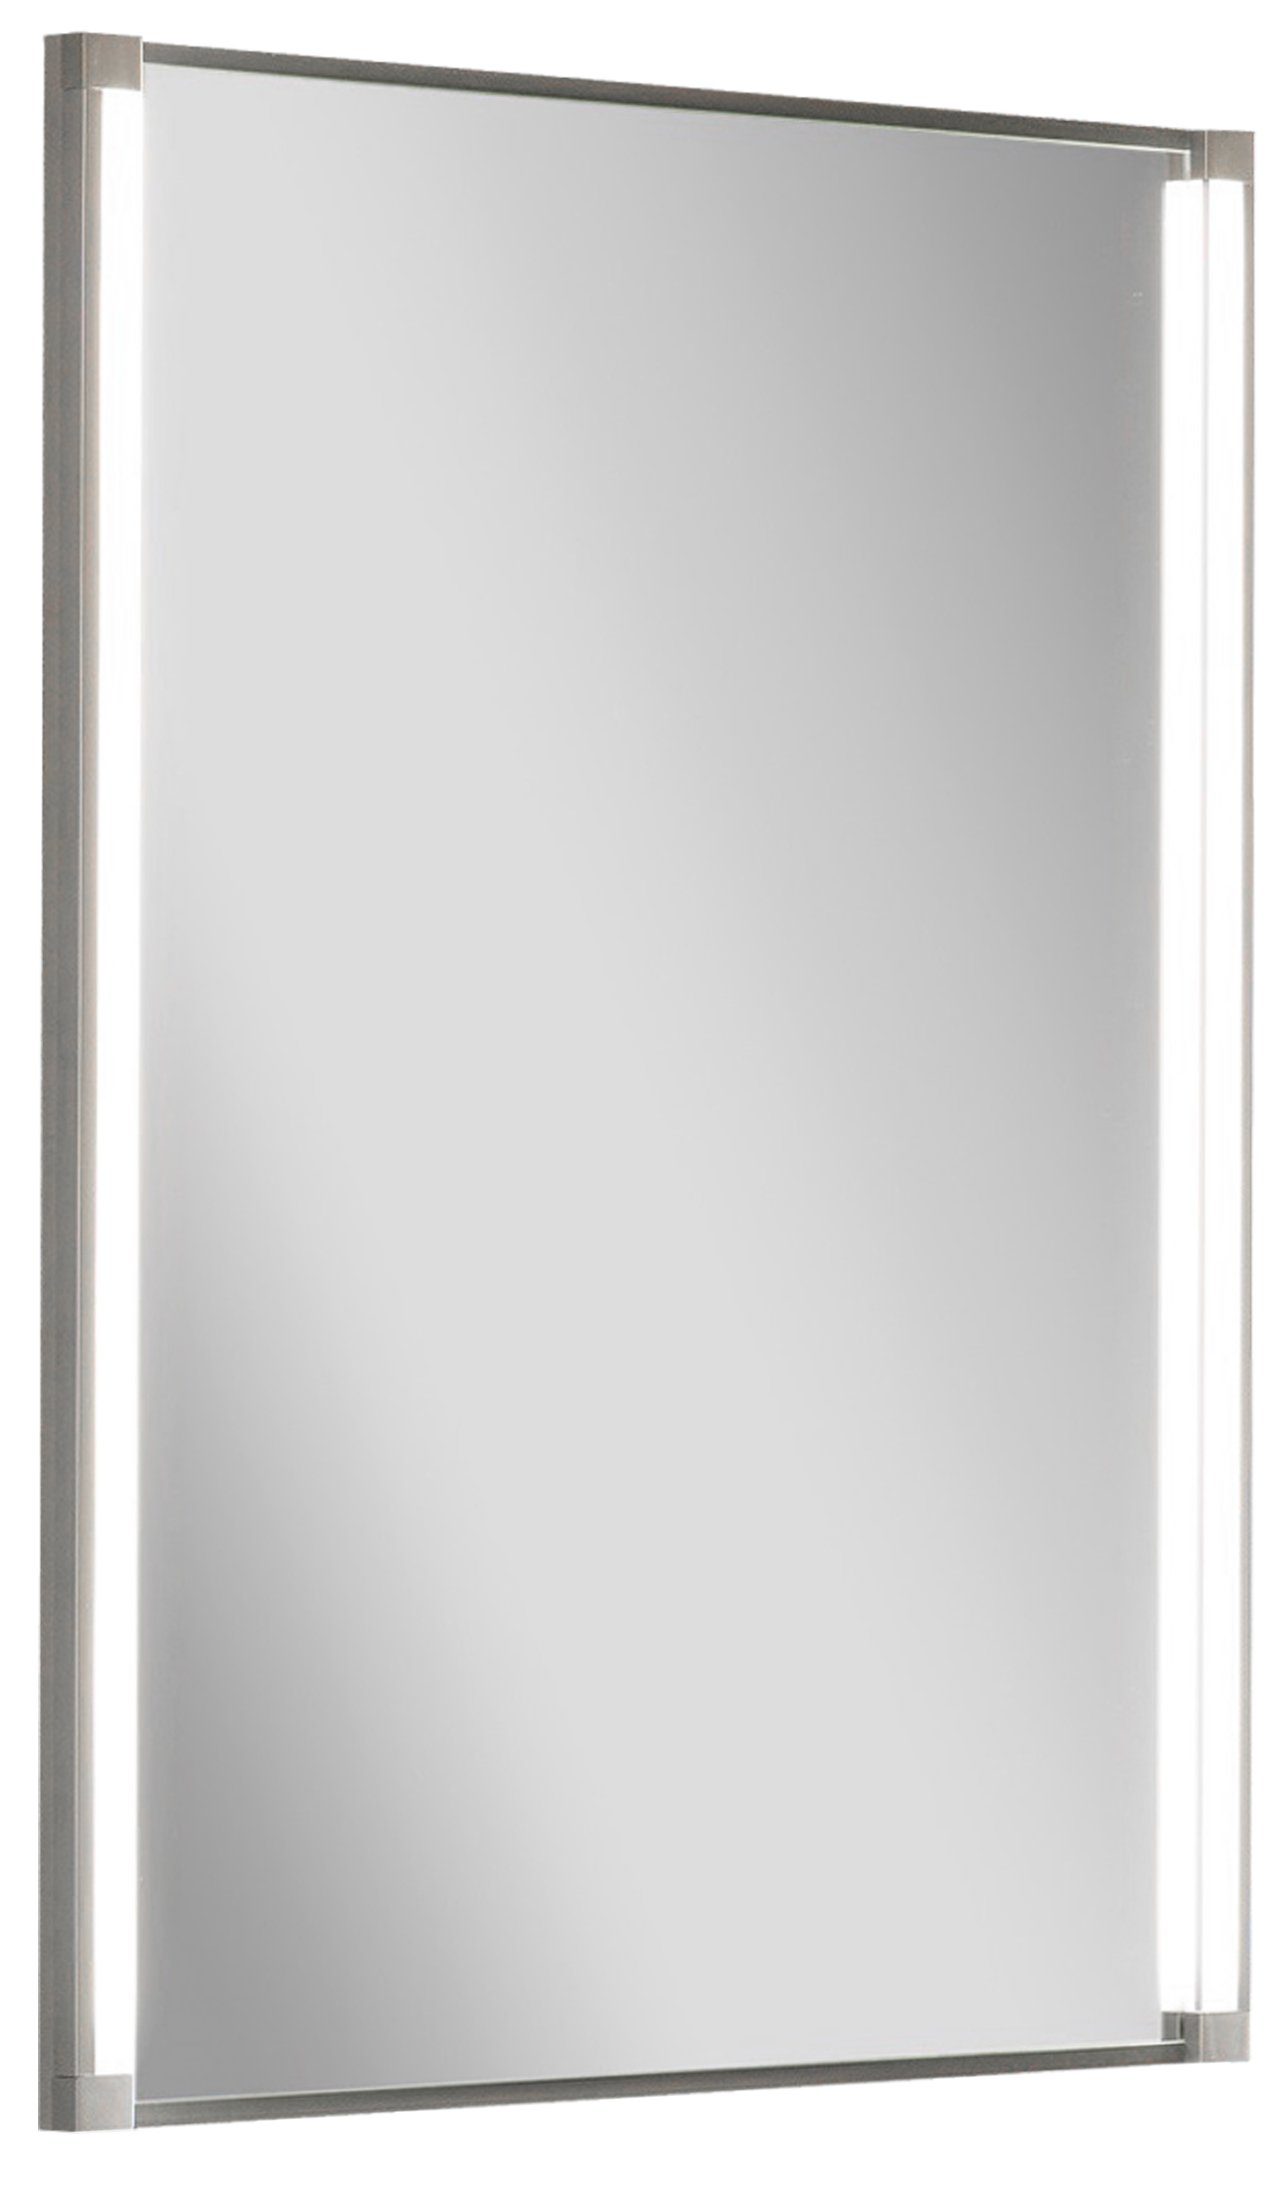 FACKELMANN Badezimmerspiegelschrank Fackelmann Spiegelelement 42,5 cm breit LED-Line Bad Spiegel Badmöbel